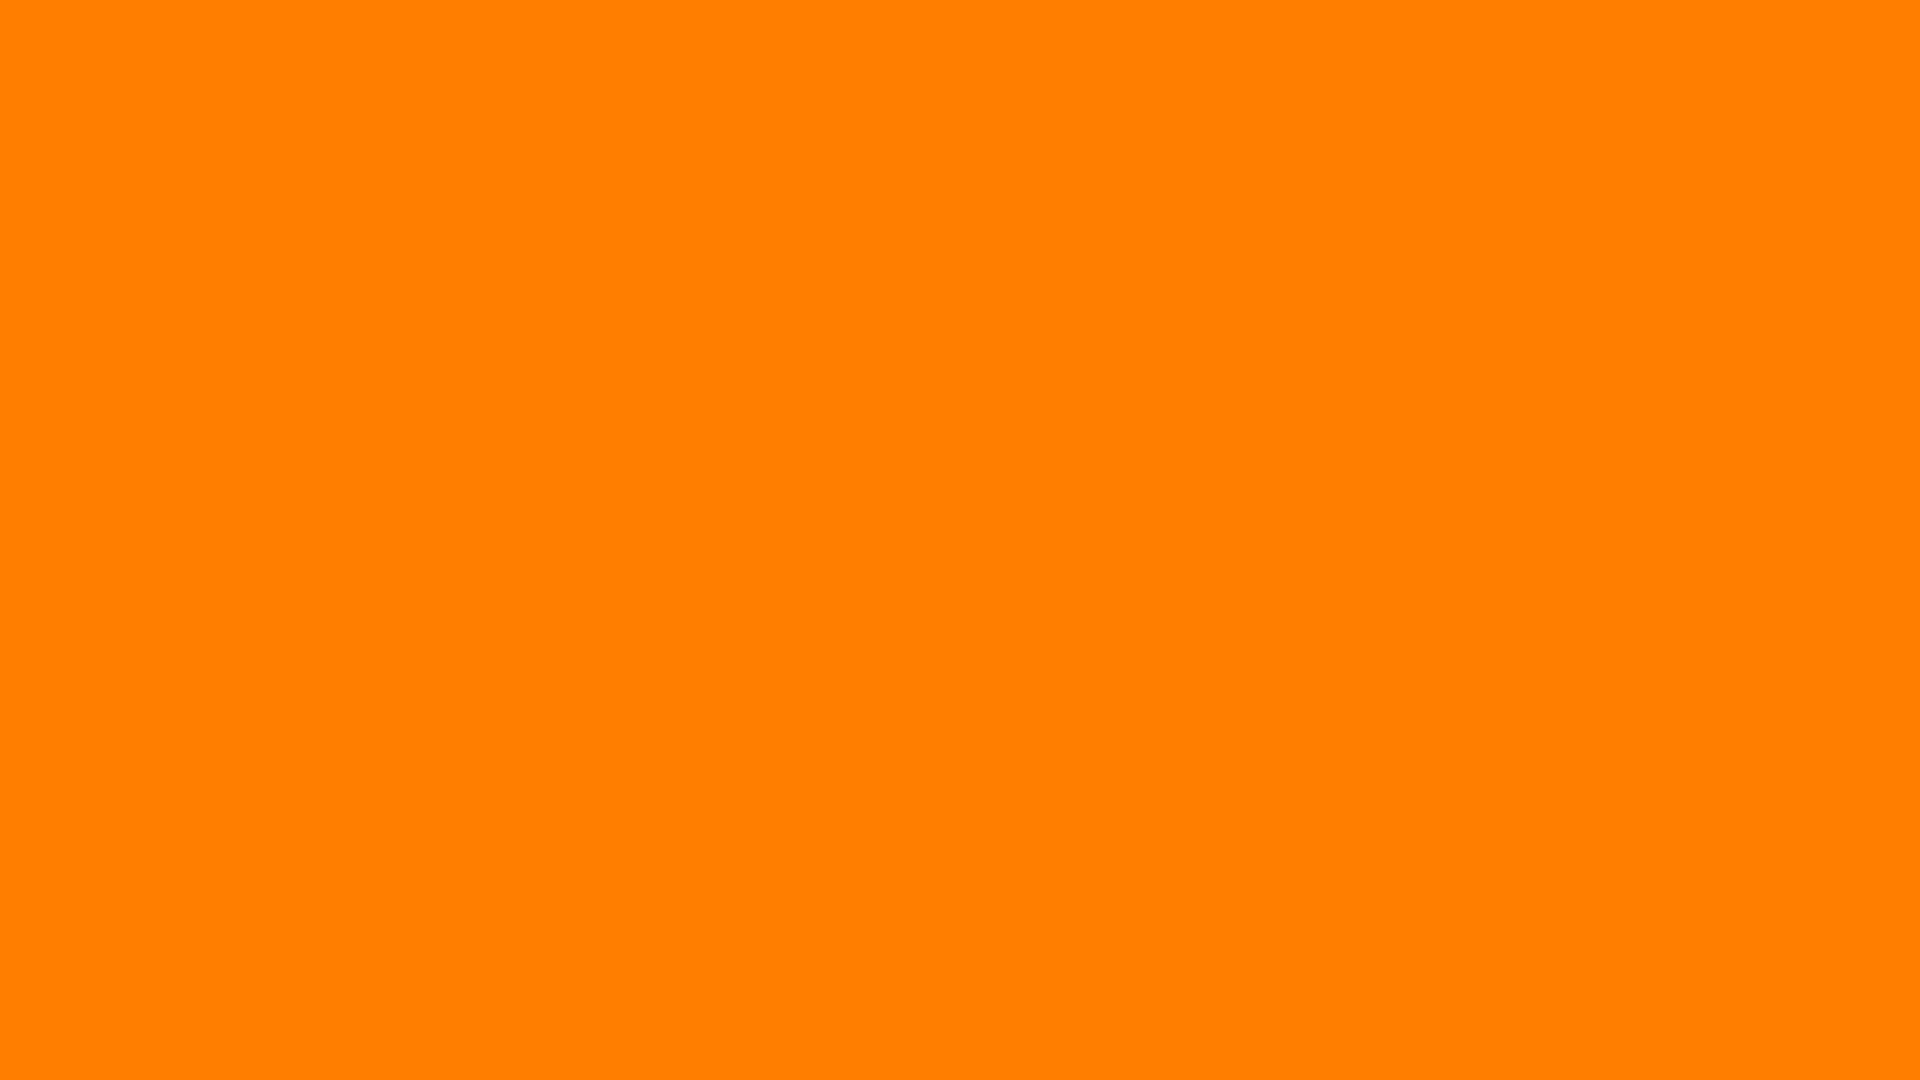 Hình nền màu cam đơn sắc trên Wallpaper Cave là sự lựa chọn hoàn hảo cho những ai yêu thích sự đơn giản và tinh tế. Với chất lượng HD, bạn sẽ có một sản phẩm tuyệt đẹp cho máy tính cá nhân và mang lại sự mới mẻ cho không gian của mình.